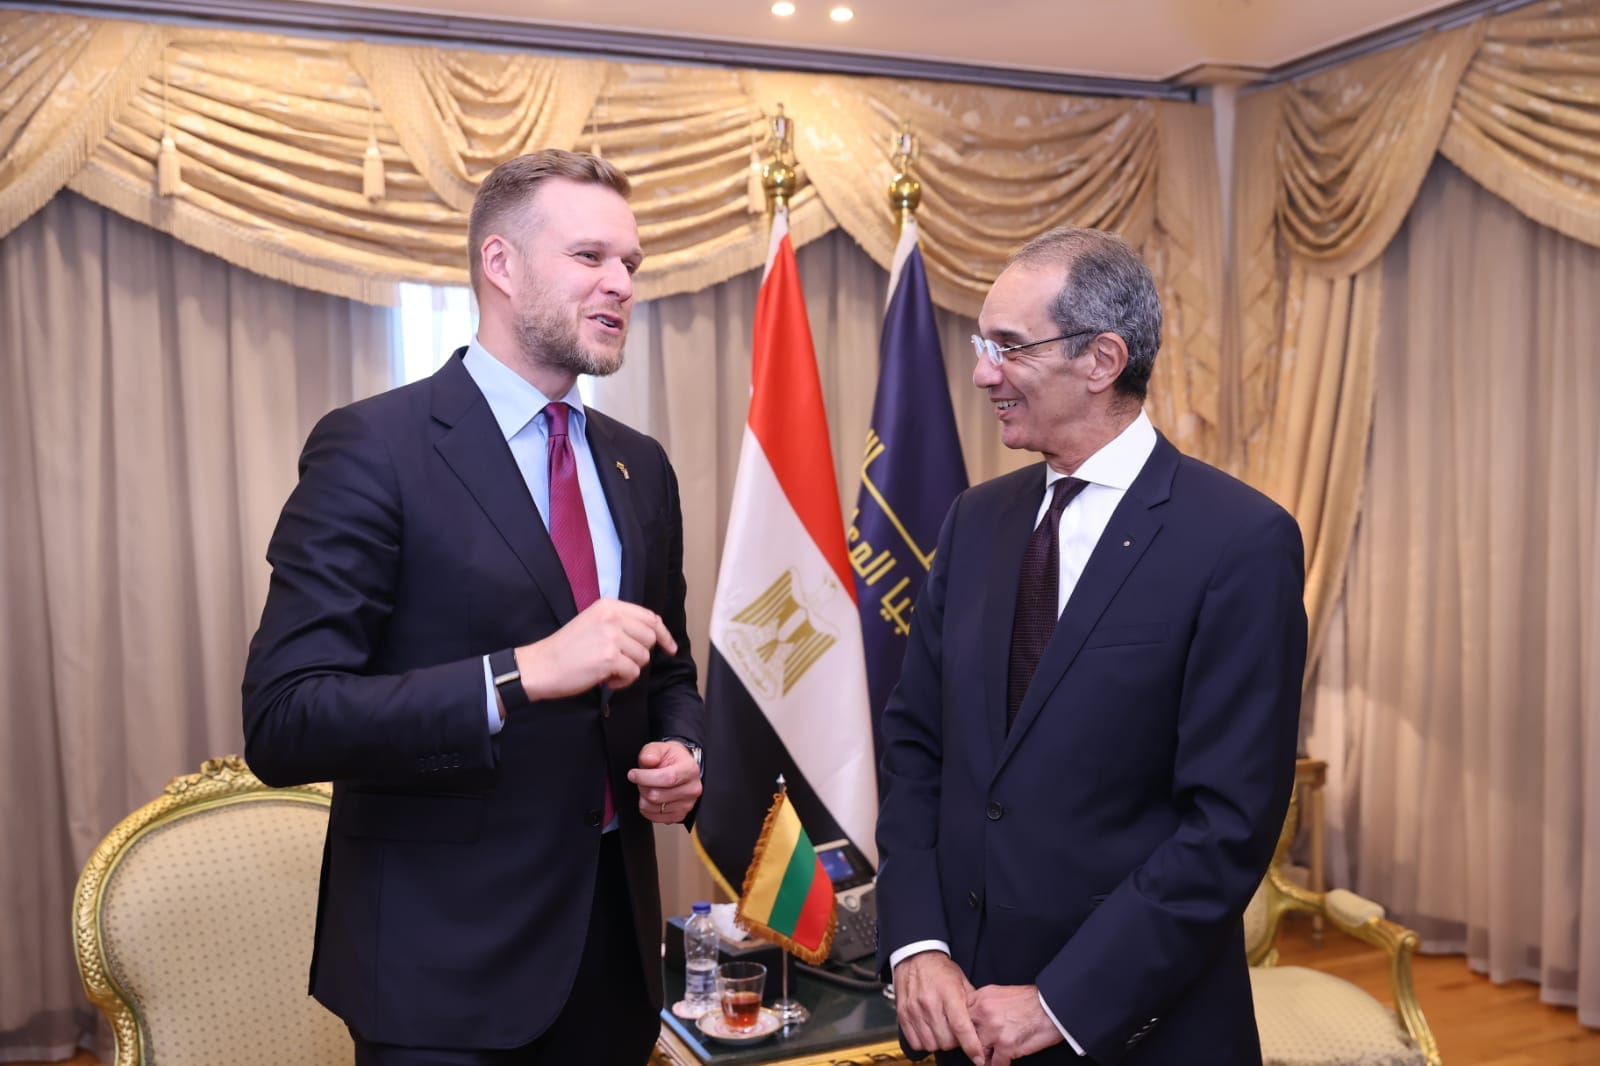 مصر وليتوانيا تبحثان تعزيز التعاون في مجال الاتصالات وتكنولوجيا المعلومات